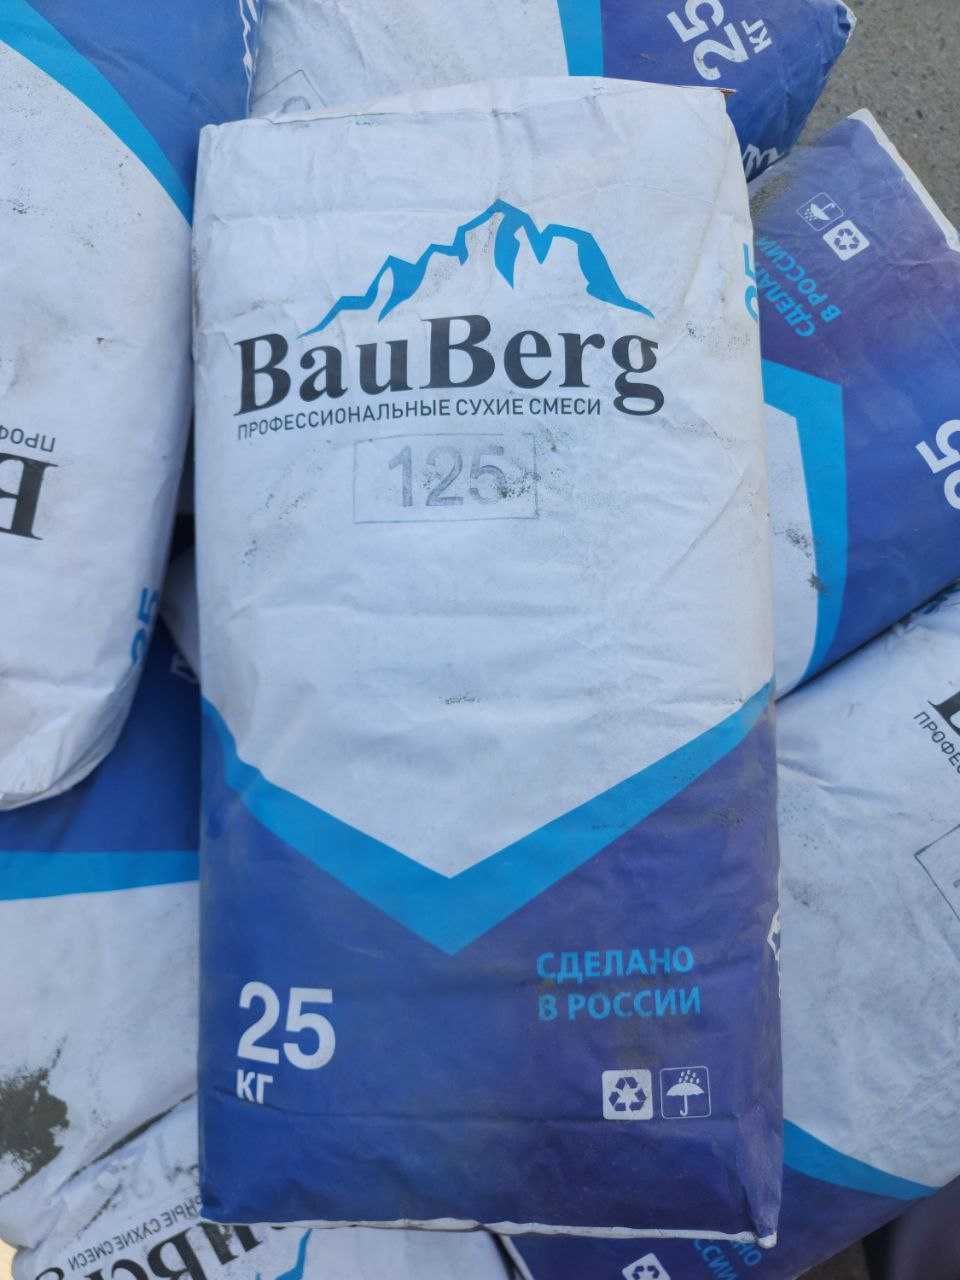 Bauberg Проникающая гидроизоляция от Российского производителя бауберг